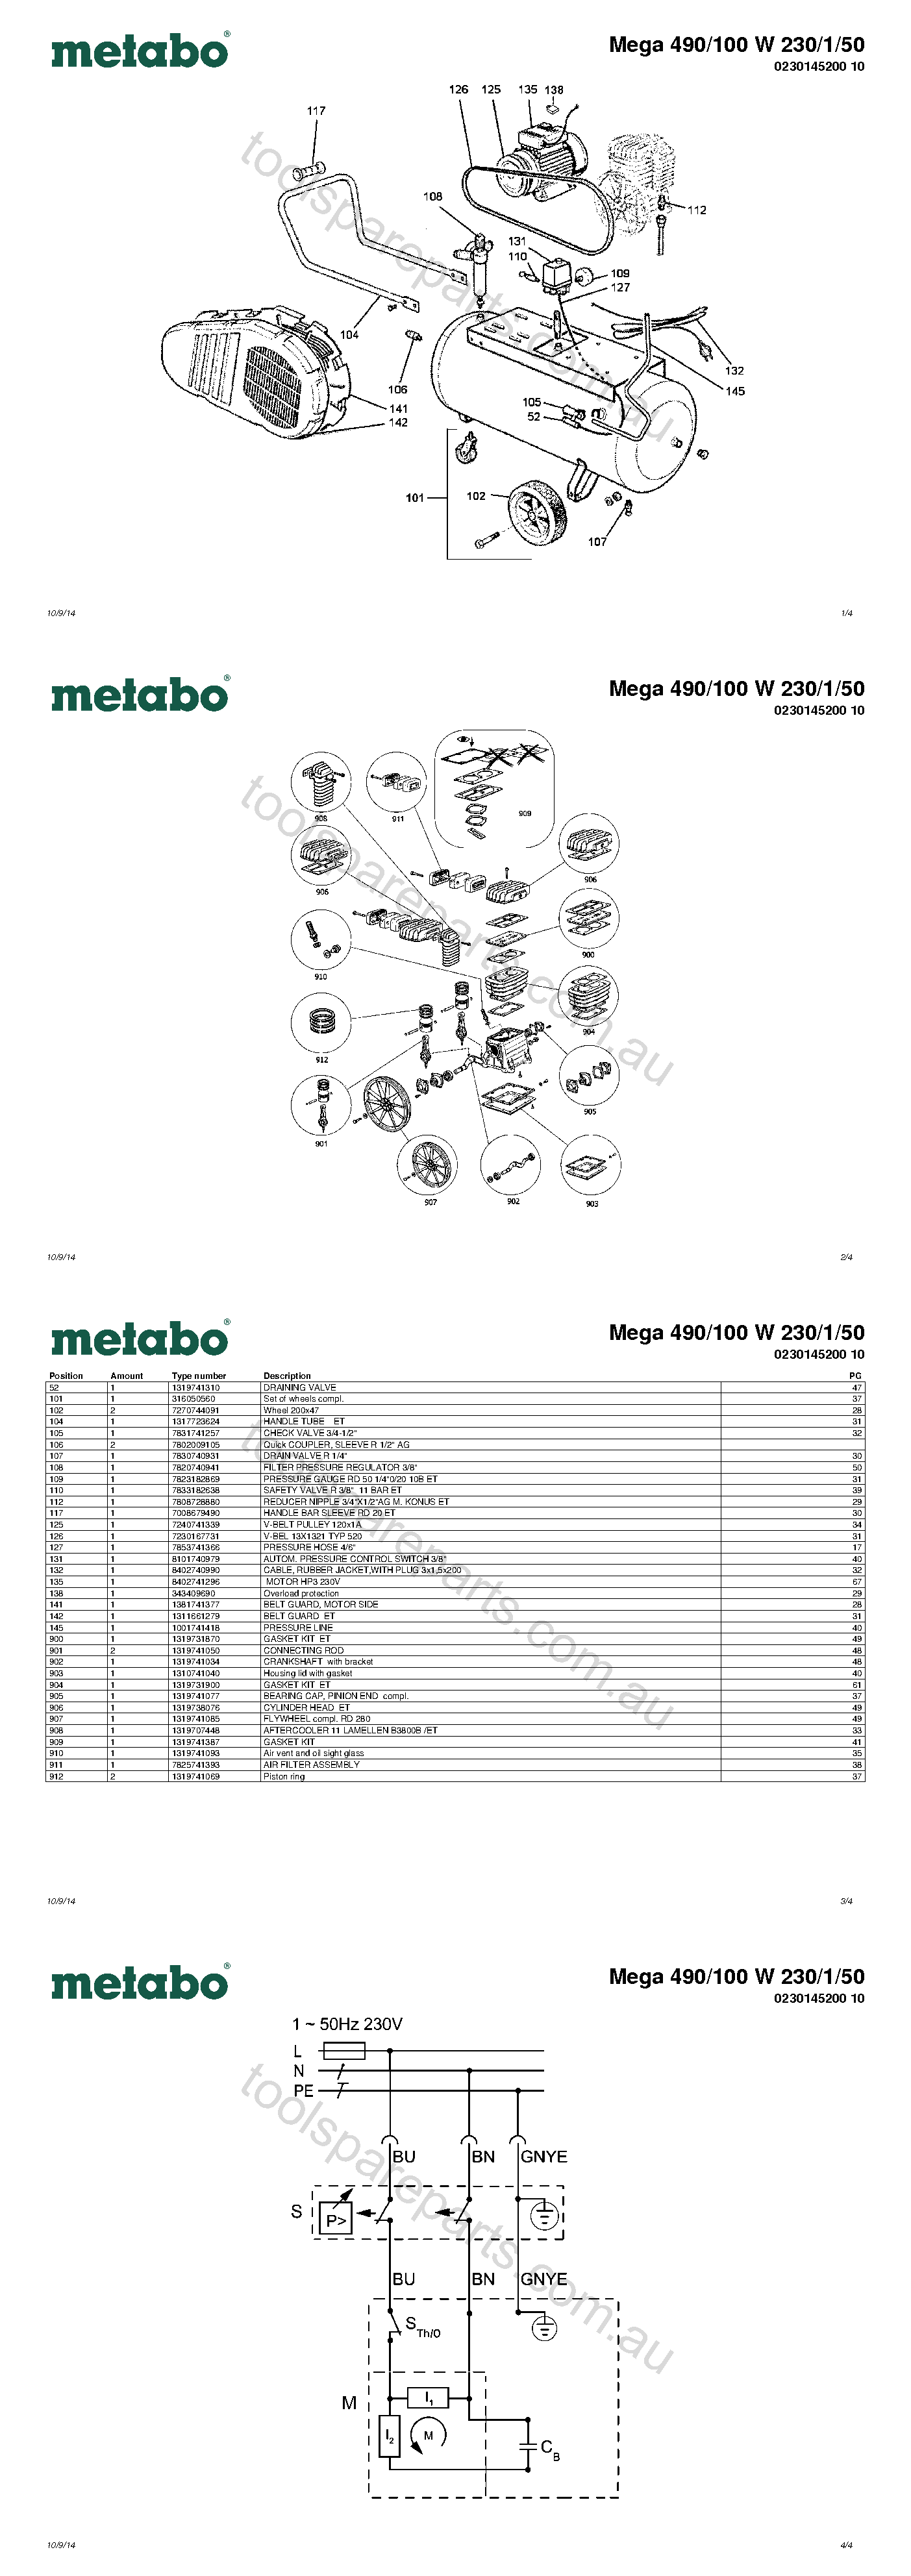 Metabo Mega 490/100 W 230/1/50 0230145200 10  Diagram 1